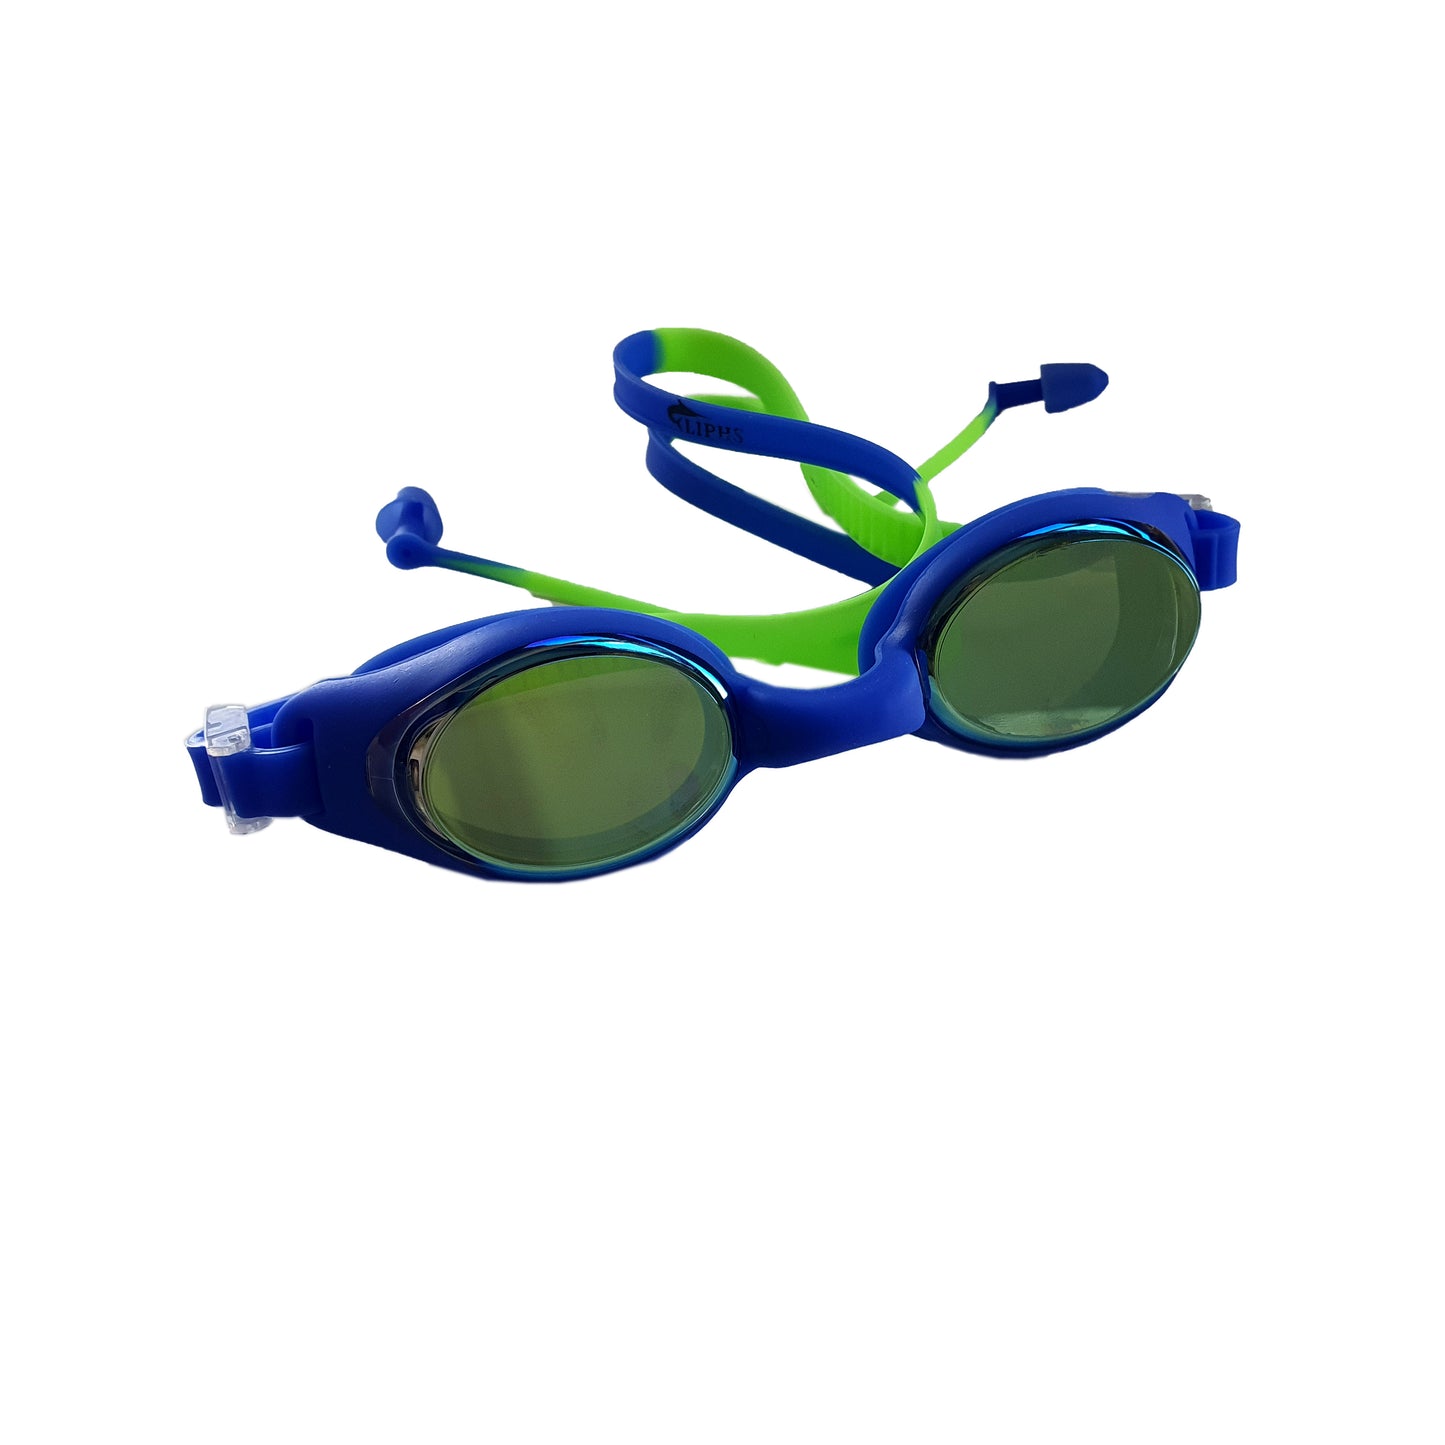 Mirrored Swim Goggles with earplugs